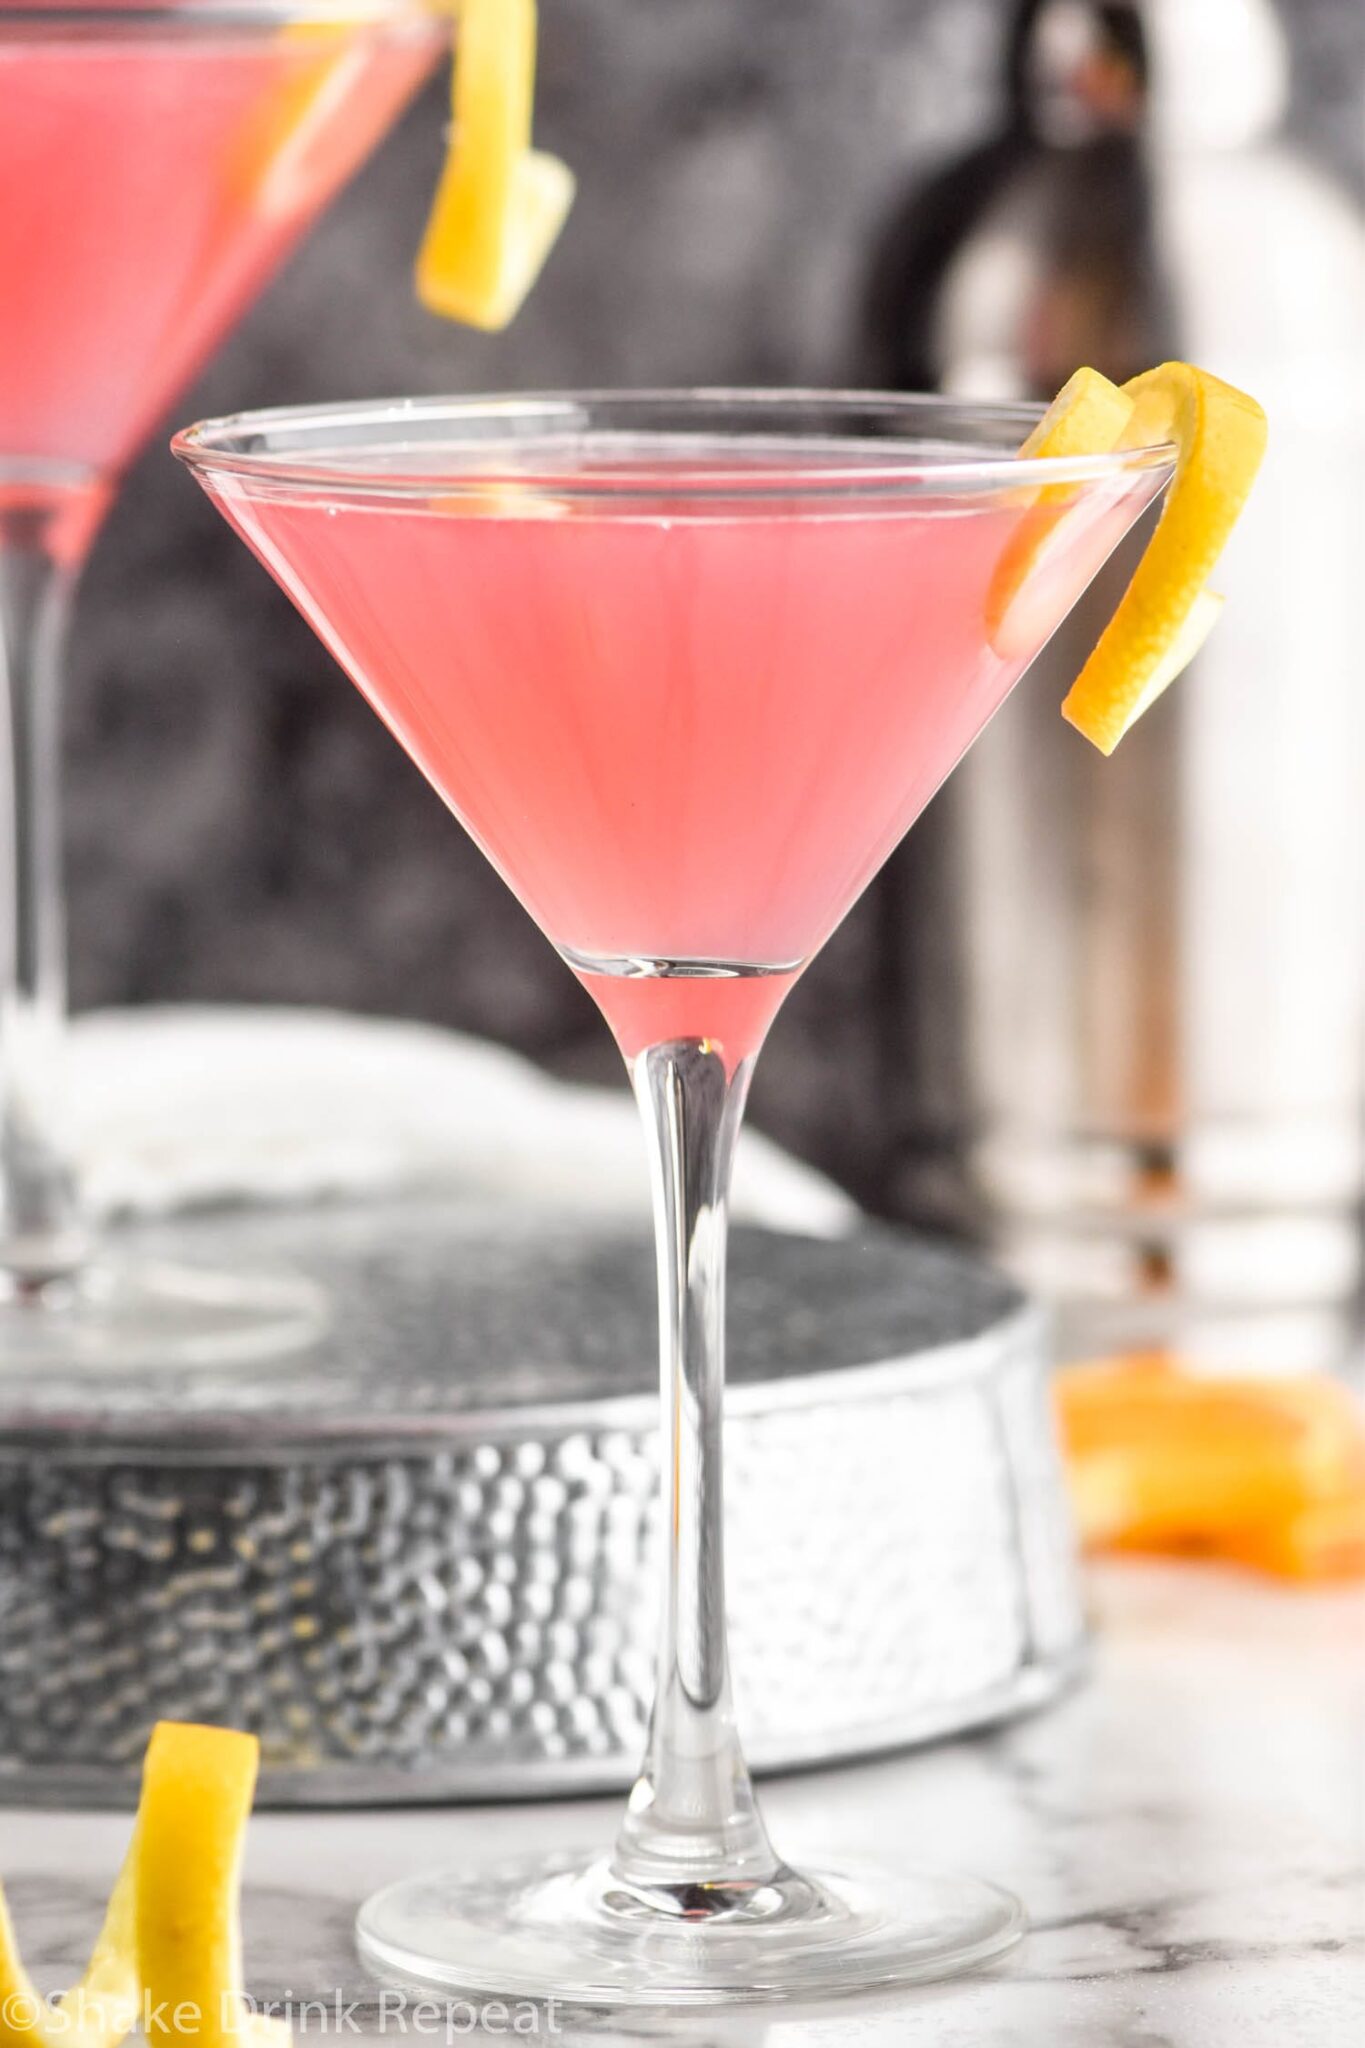 cosmopolitan-cocktail-shake-drink-repeat